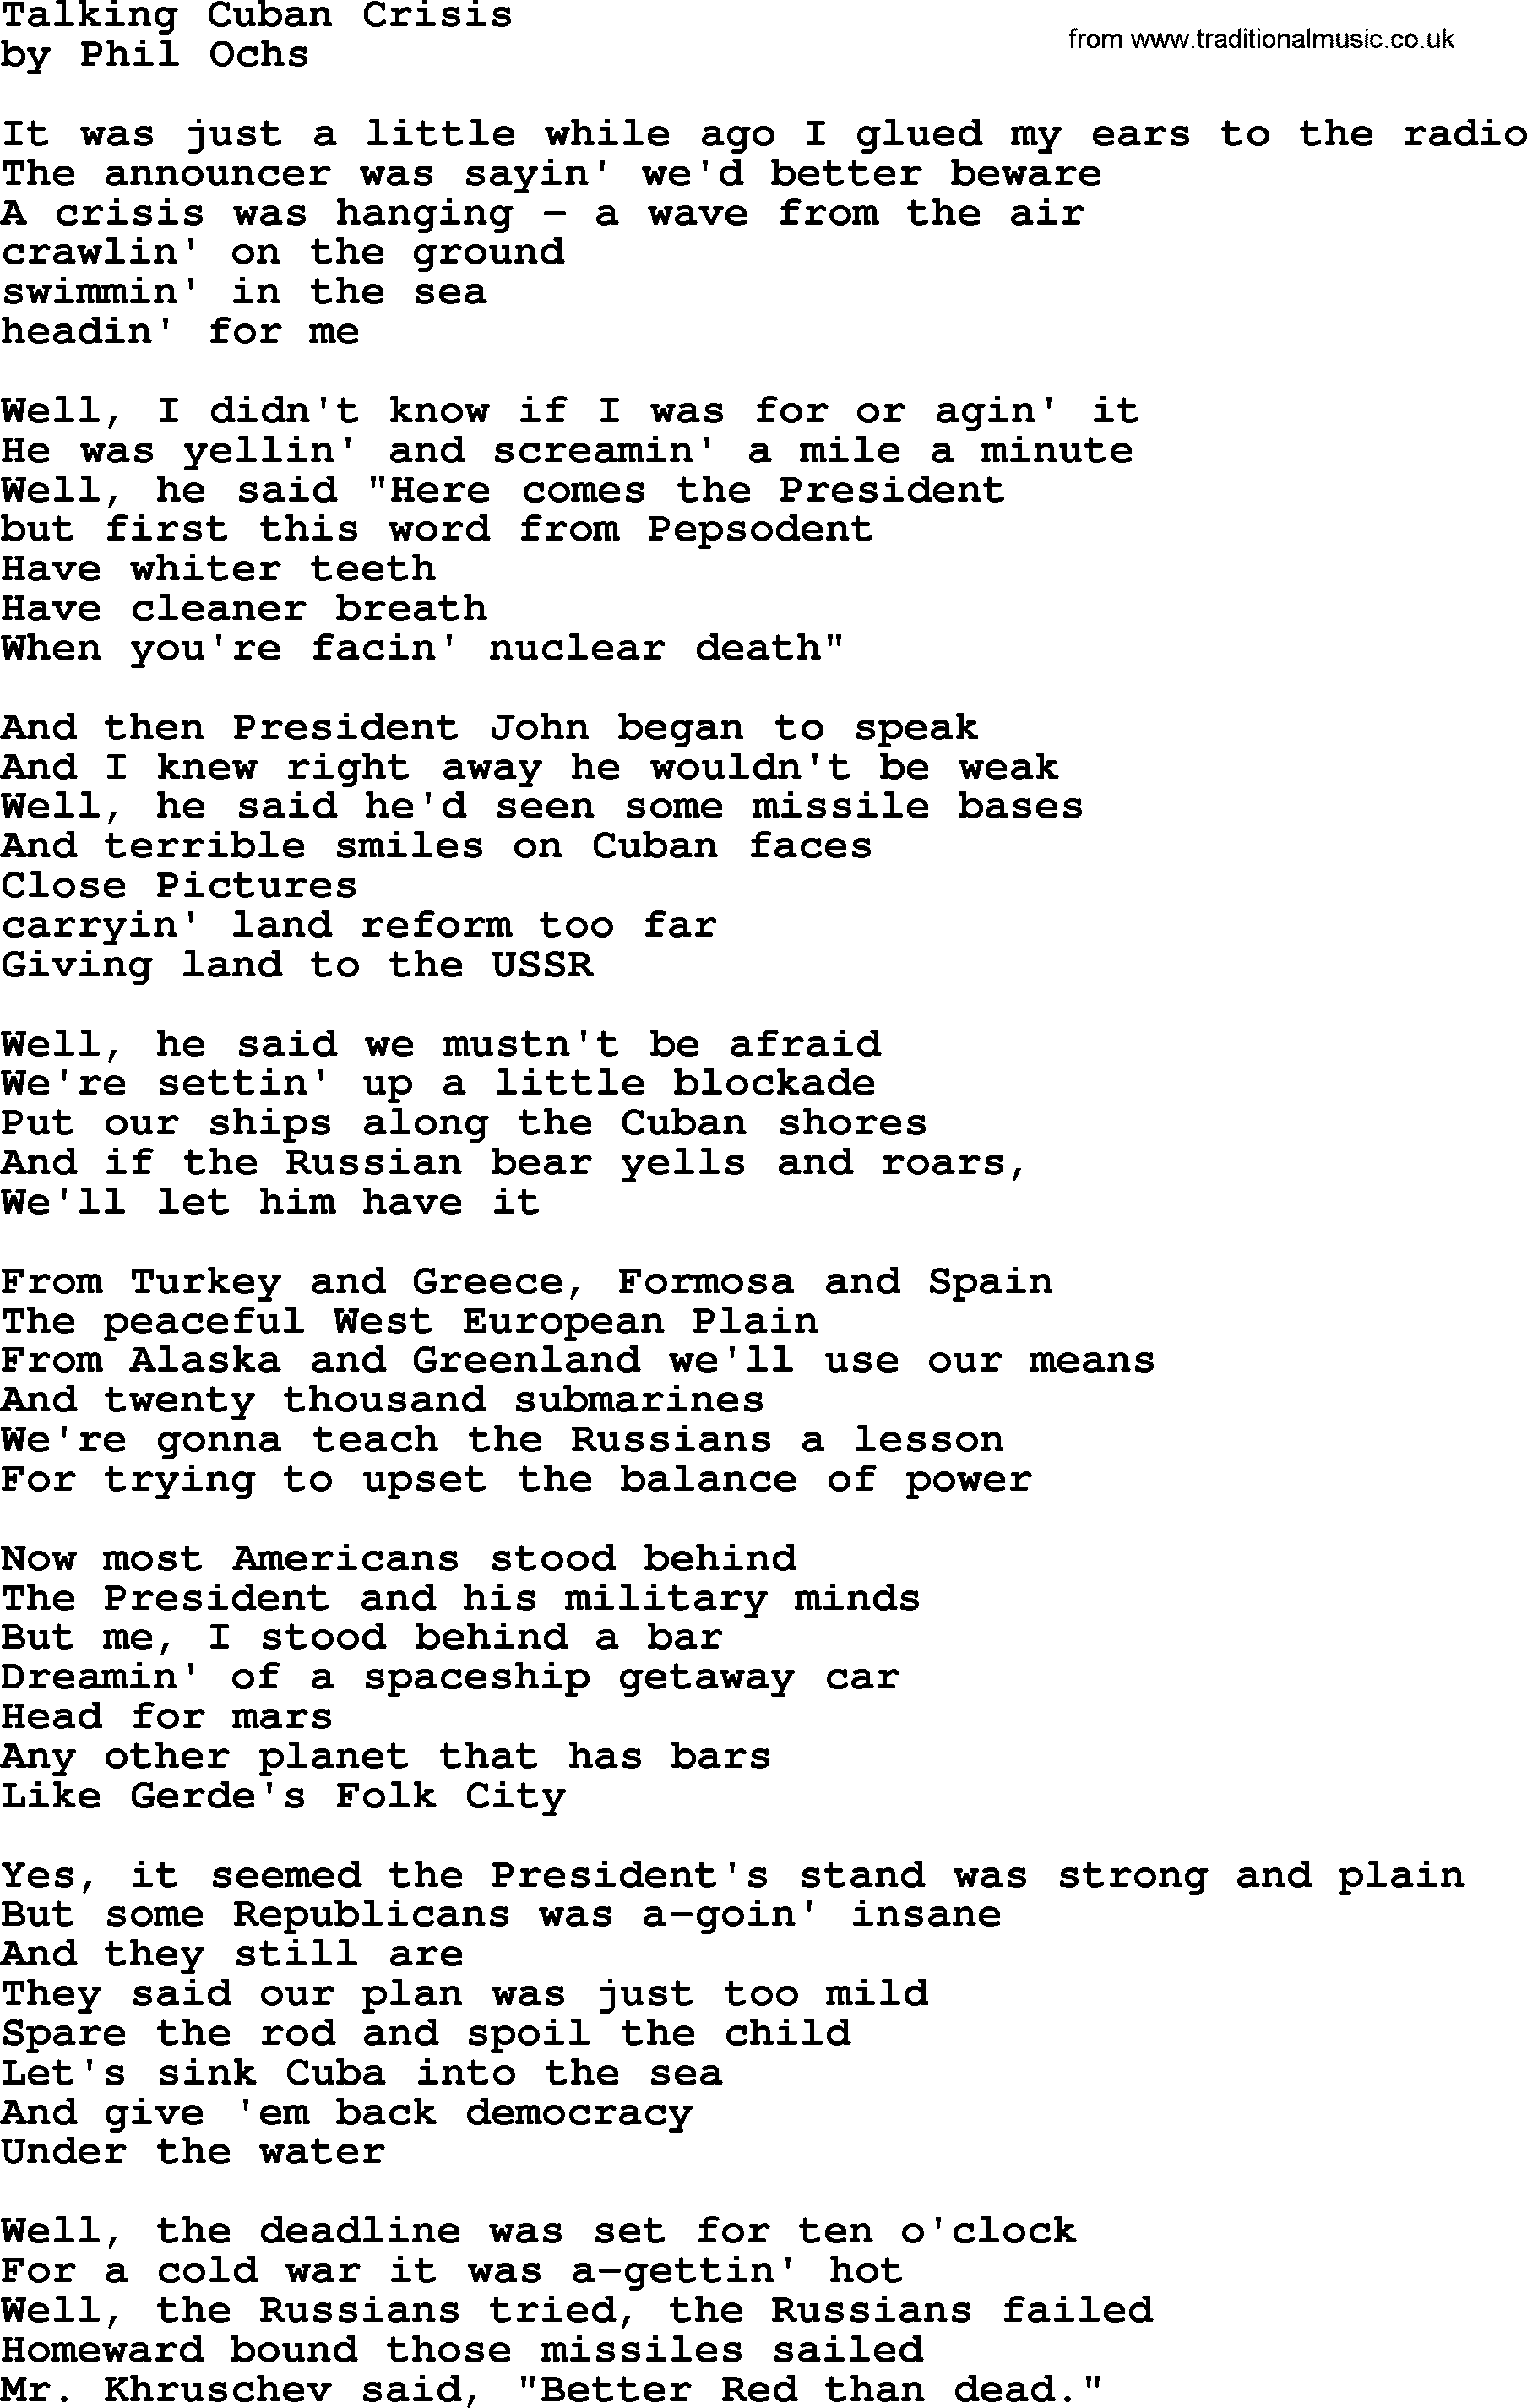 Phil Ochs song Talking Cuban Crisis, lyrics